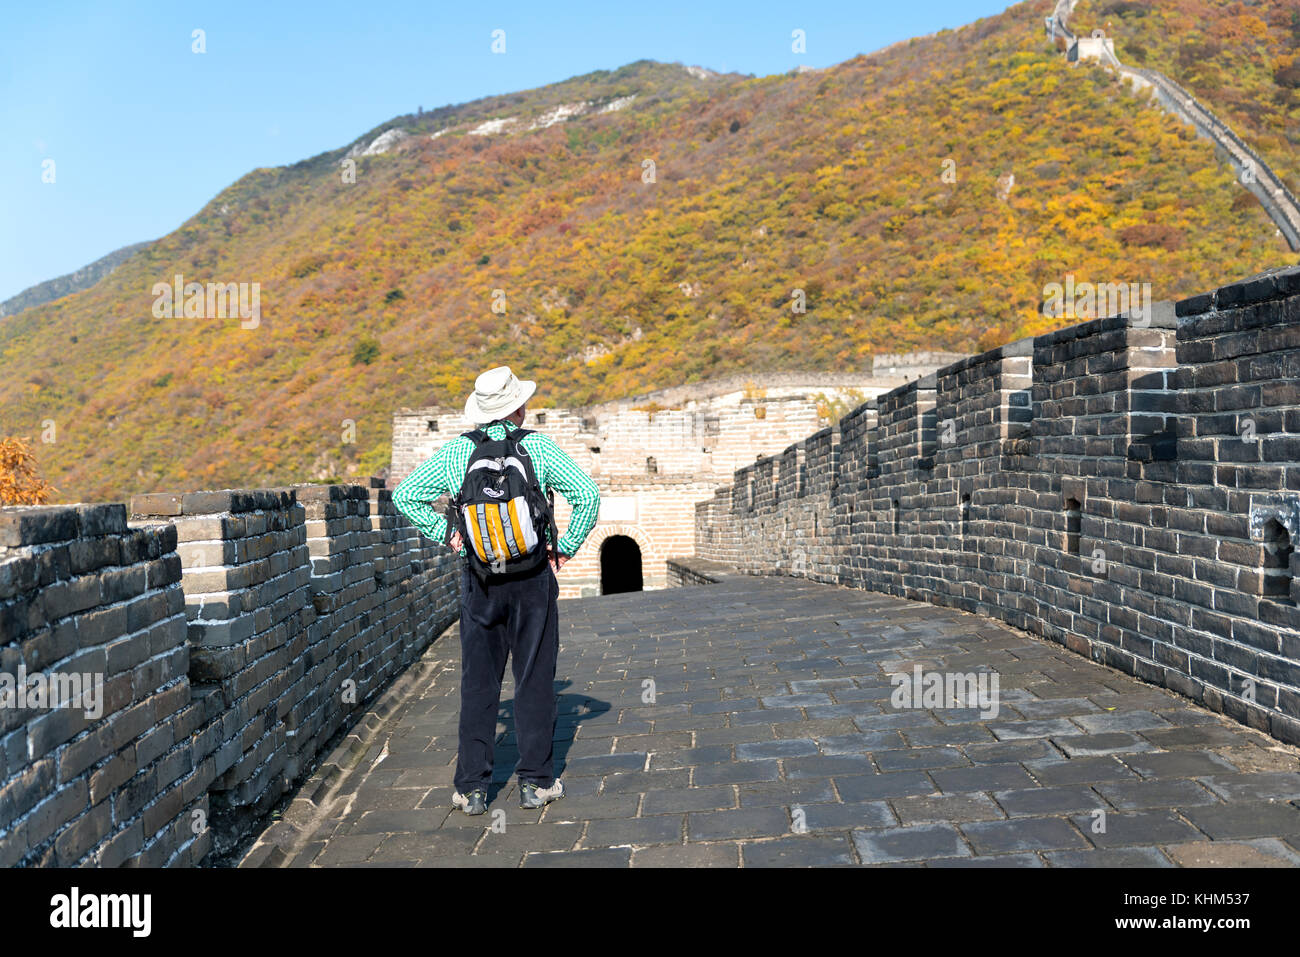 Touristische Mann von hinten mit Blick auf die Chinesische Mauer bei Mutianyu berühmt Tourismus Attraktion während der Reise Urlaub in Peking. Asien Herbst ho Stockfoto